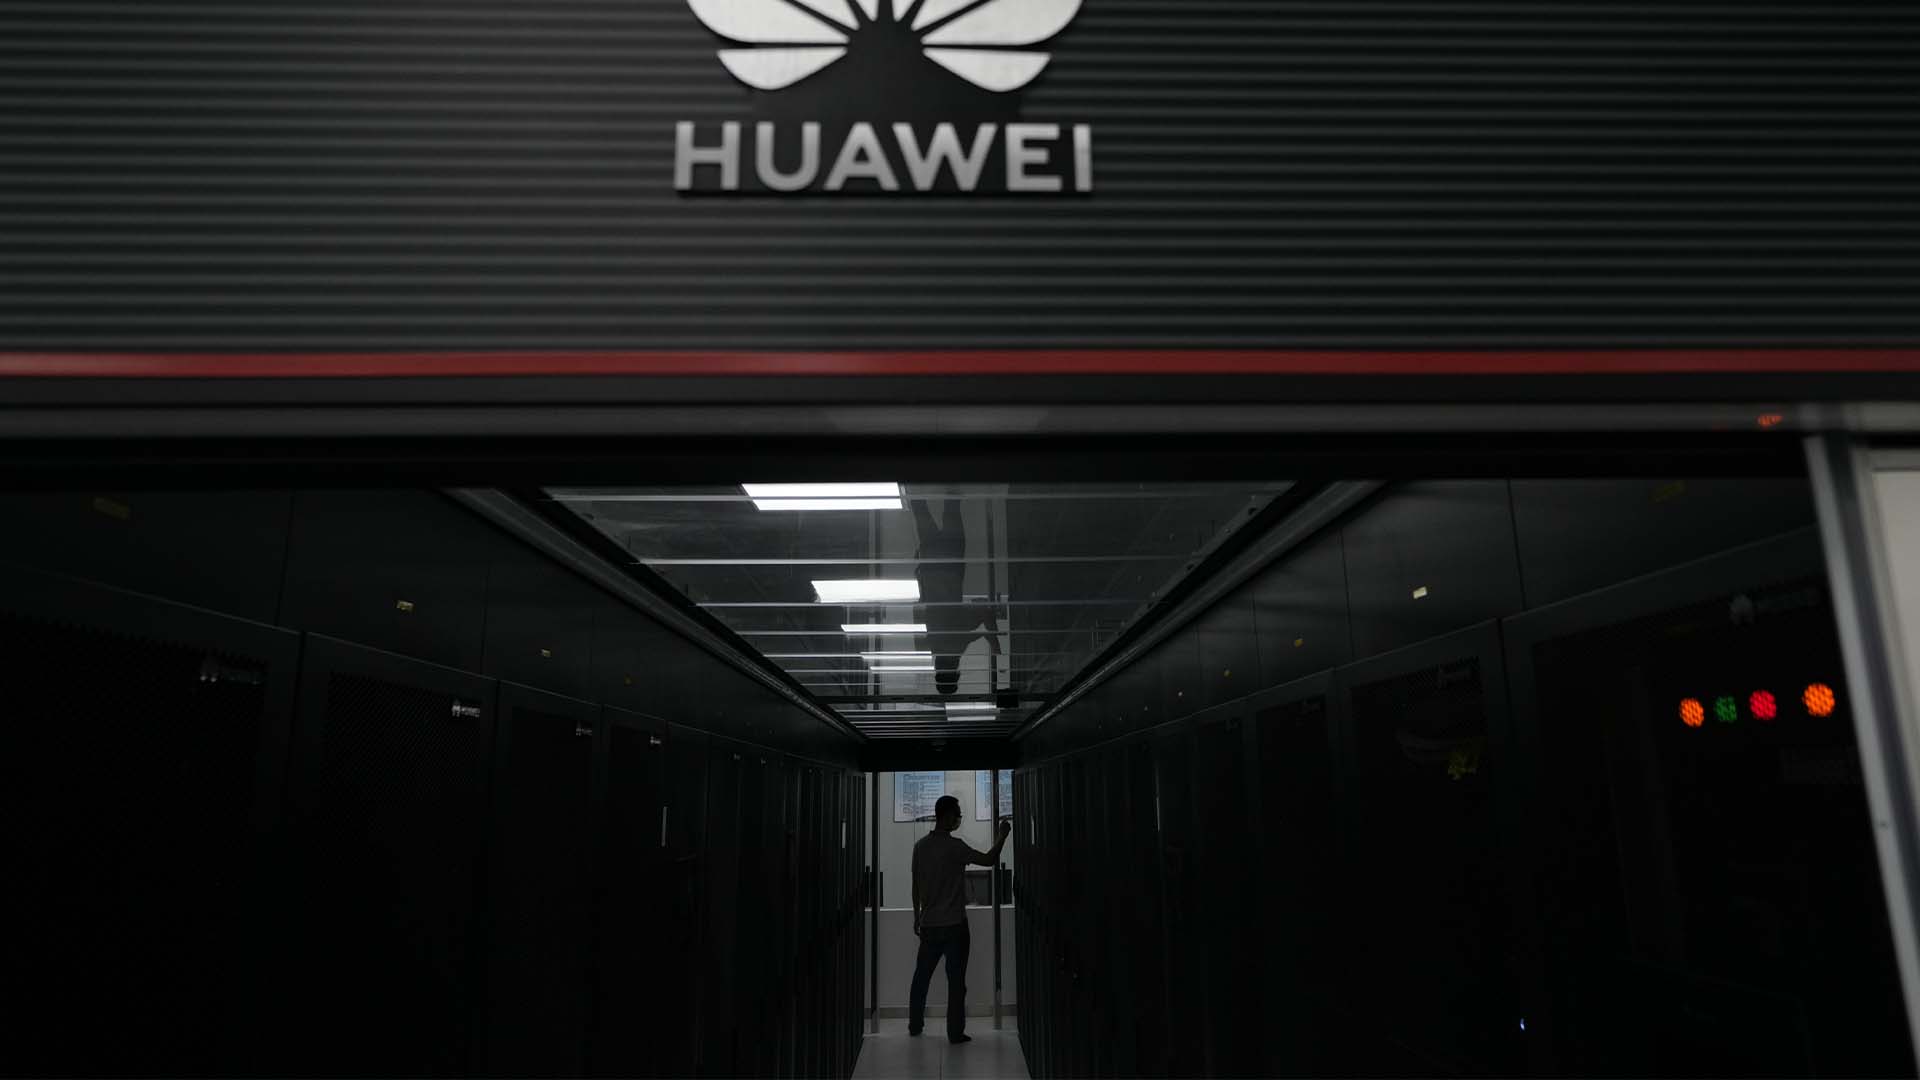 Le premier ministre Justin Trudeau, qui était de passe à Sept-Îles vendredi, a qualifié de «reponsable» la décision de son gouvernement d'interdire les sociétés chinoises Huawei Technologies et ZTE de ses réseaux mobiles de nouvelle génération.